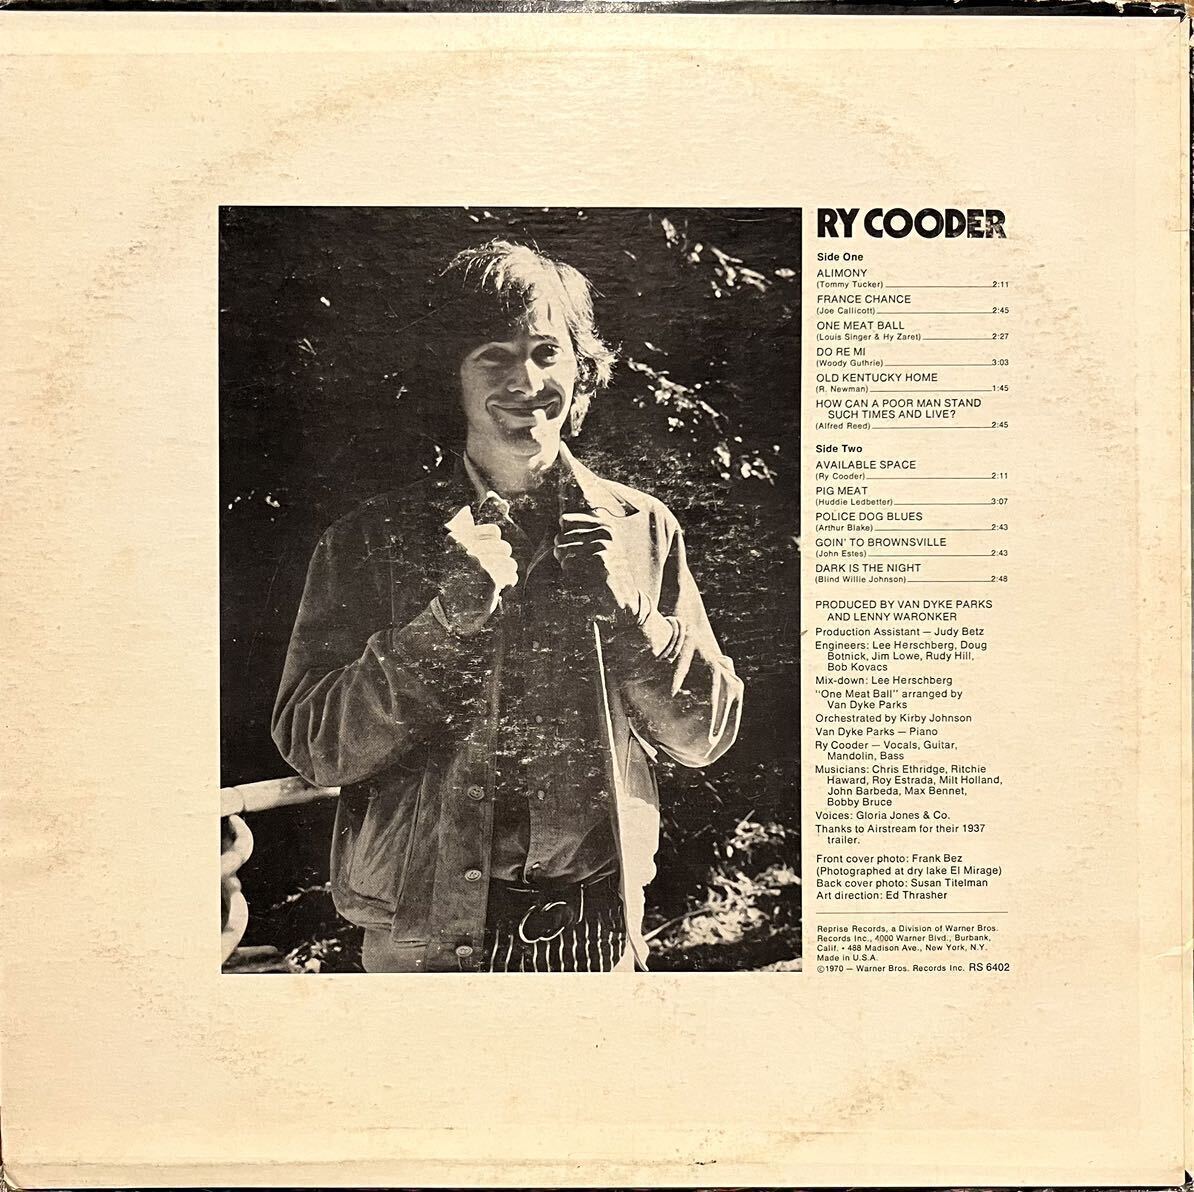 最高音質★USプロモ盤/白ラベル/オリジナル盤★[完品/インナー付属] Ry Cooder -1st Album- ライ・クーダー登場 LPレコード RS 6402_画像8